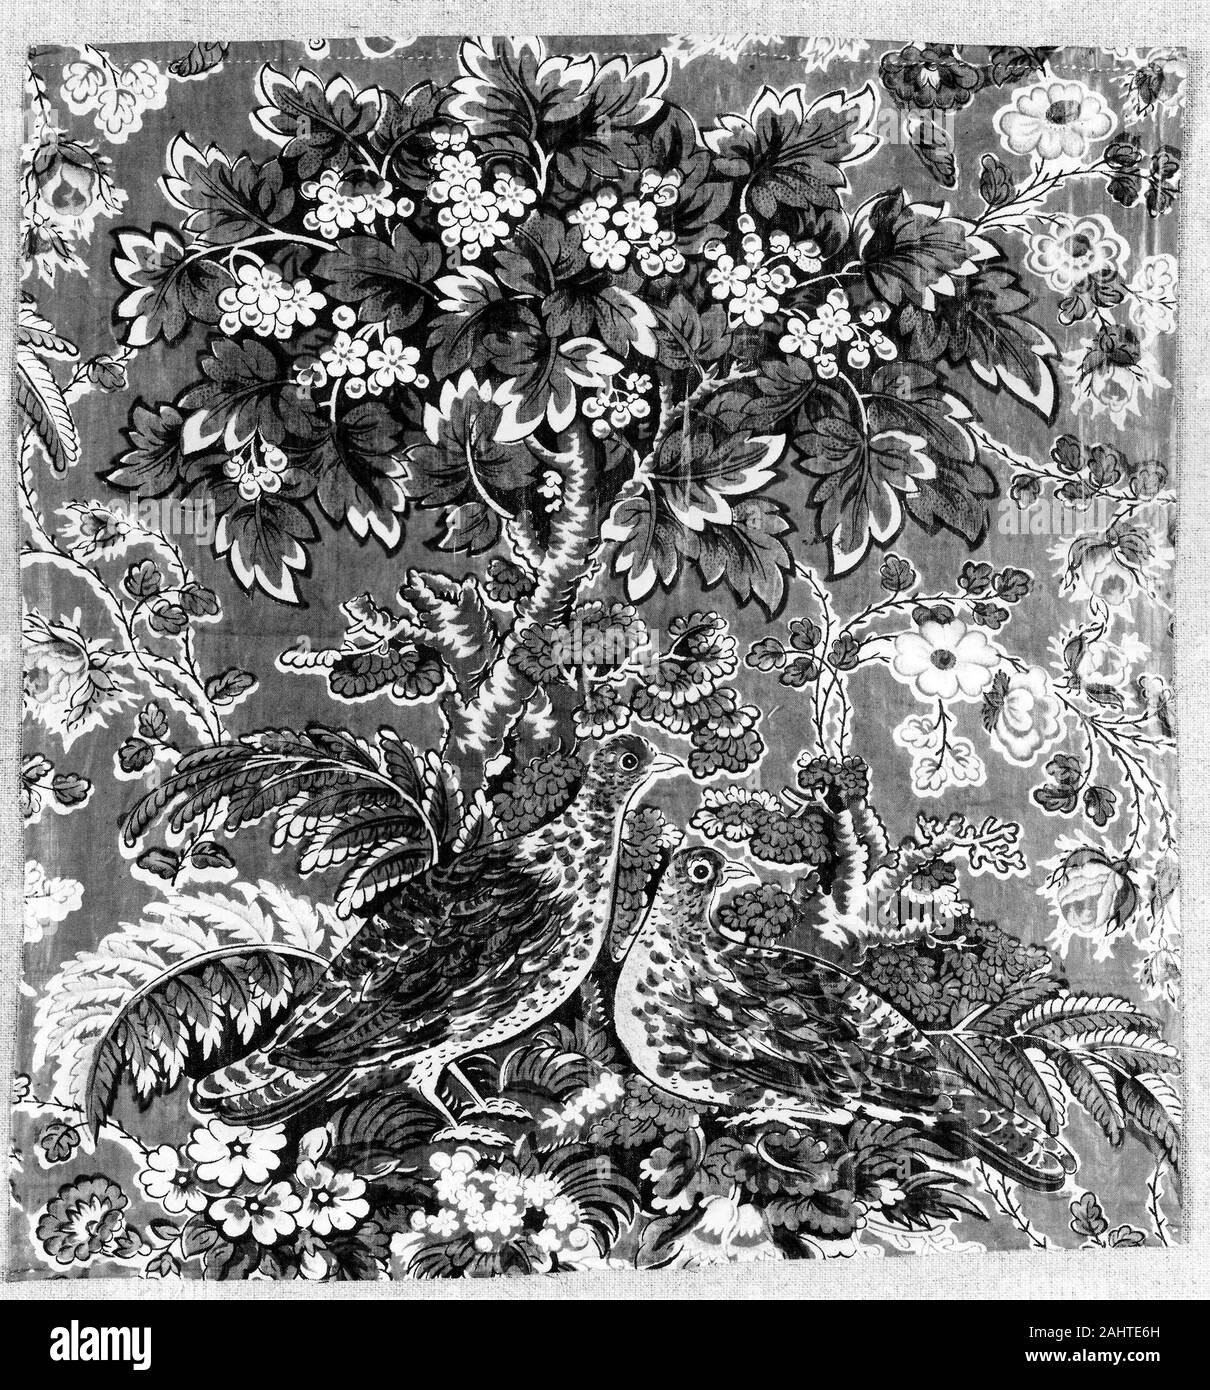 Geländer Halle Print funktioniert (Drucker). Panel. 1805 - 1825. England. Baumwolle, in Leinwandbindung; Block gedruckt Stockfoto